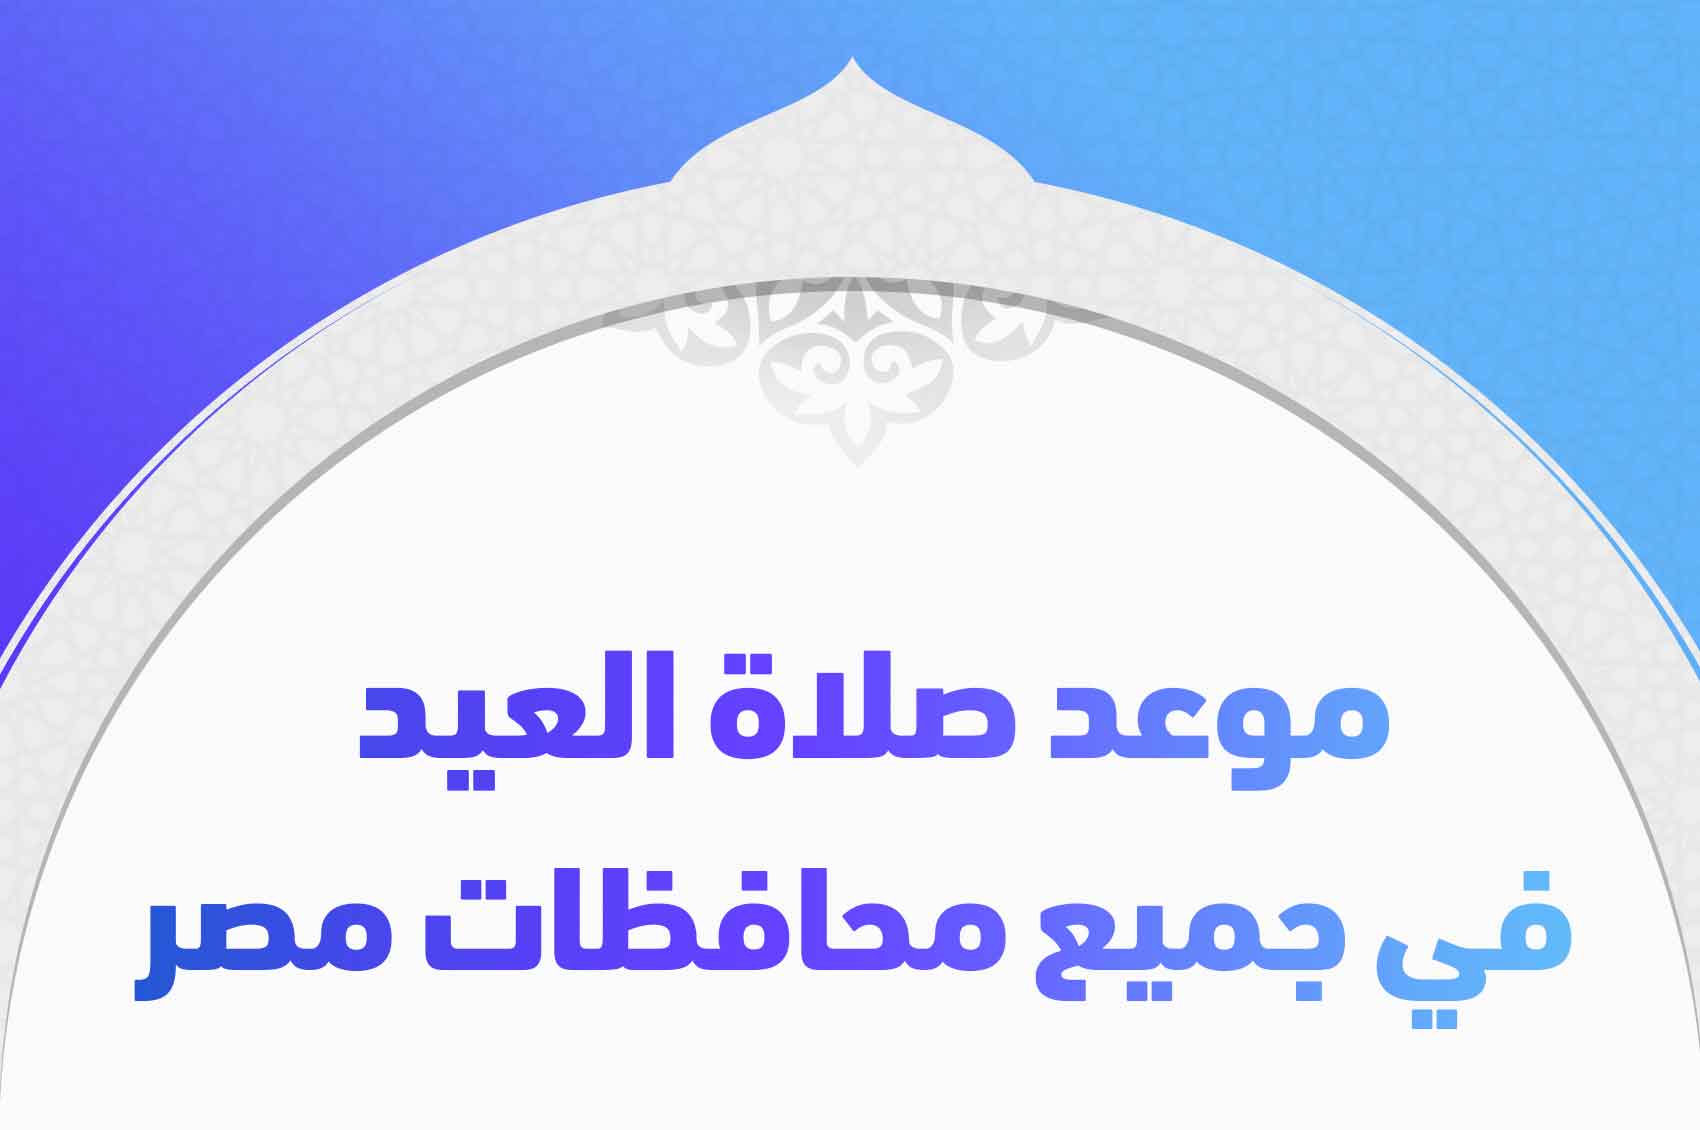 موعد صلاة العيد في جميع محافظات مصر